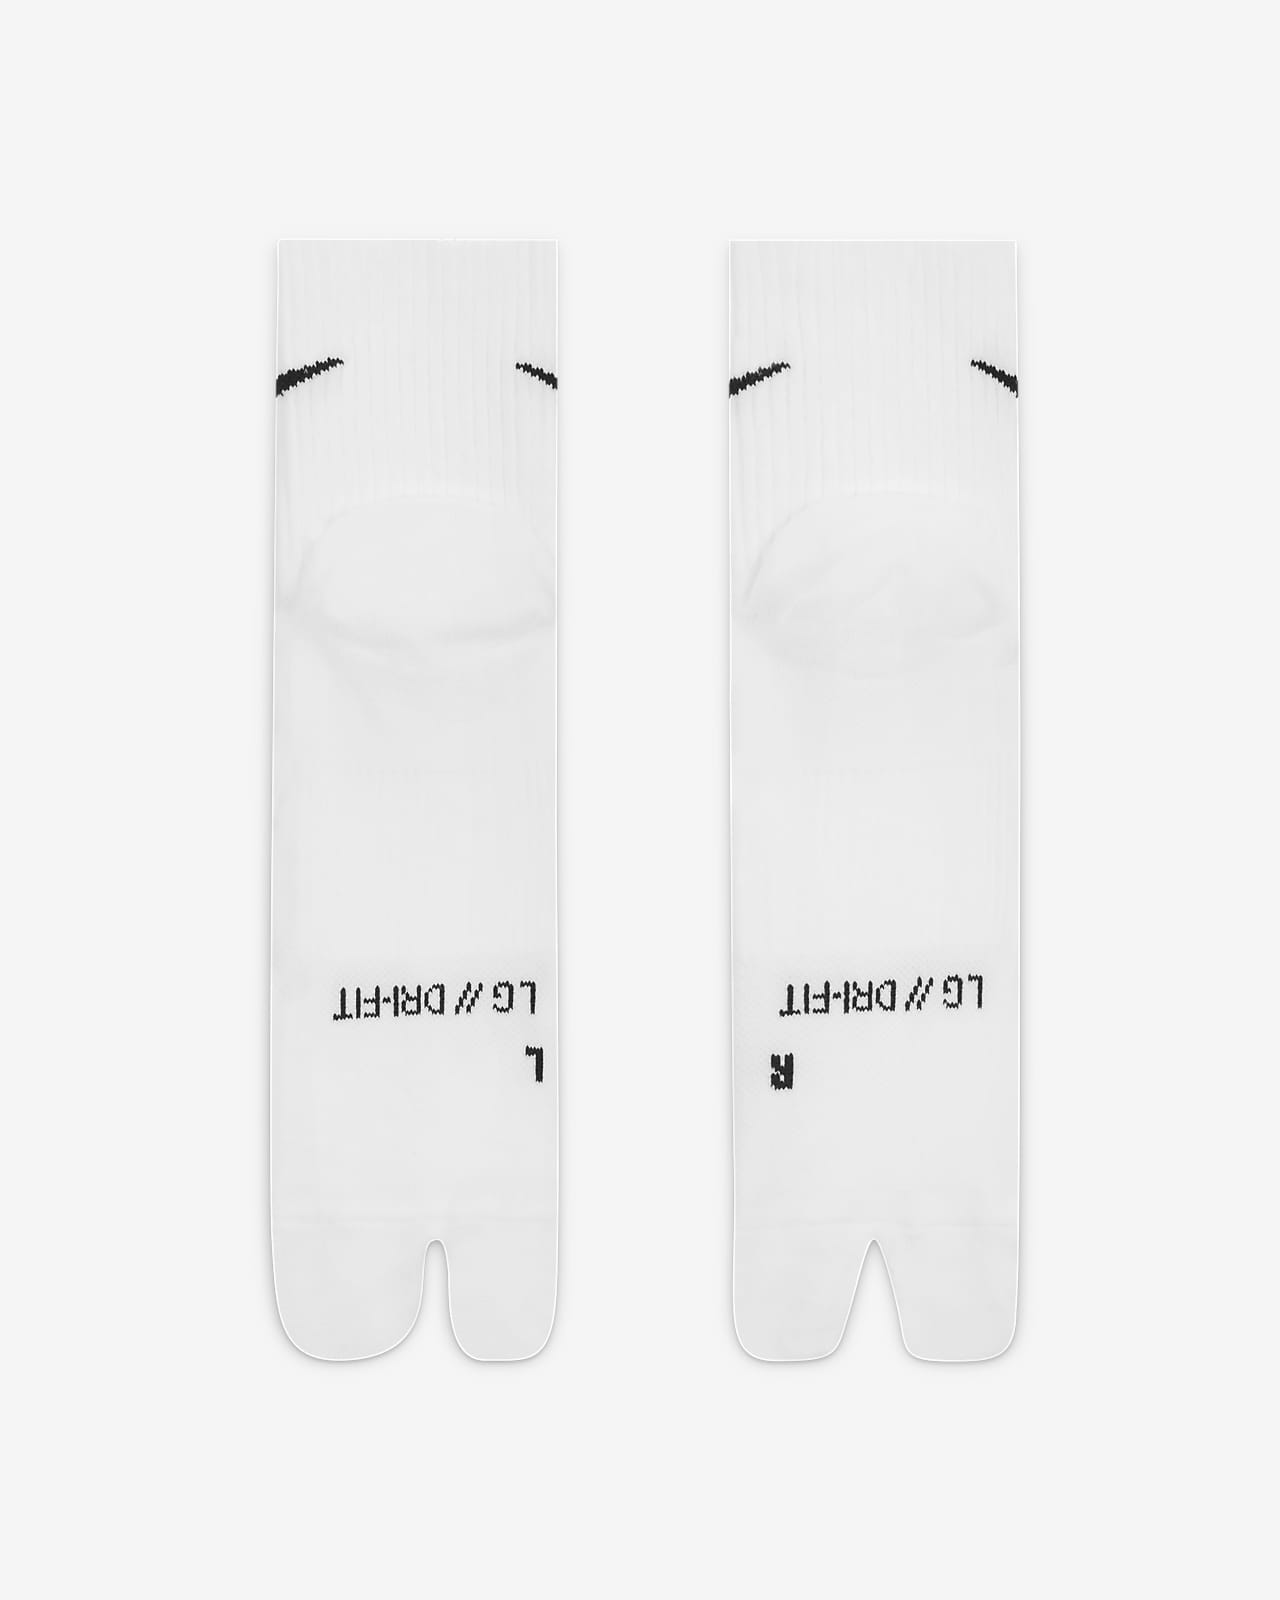 Nike Everyday Plus Calcetines tobilleros ligeros con separación